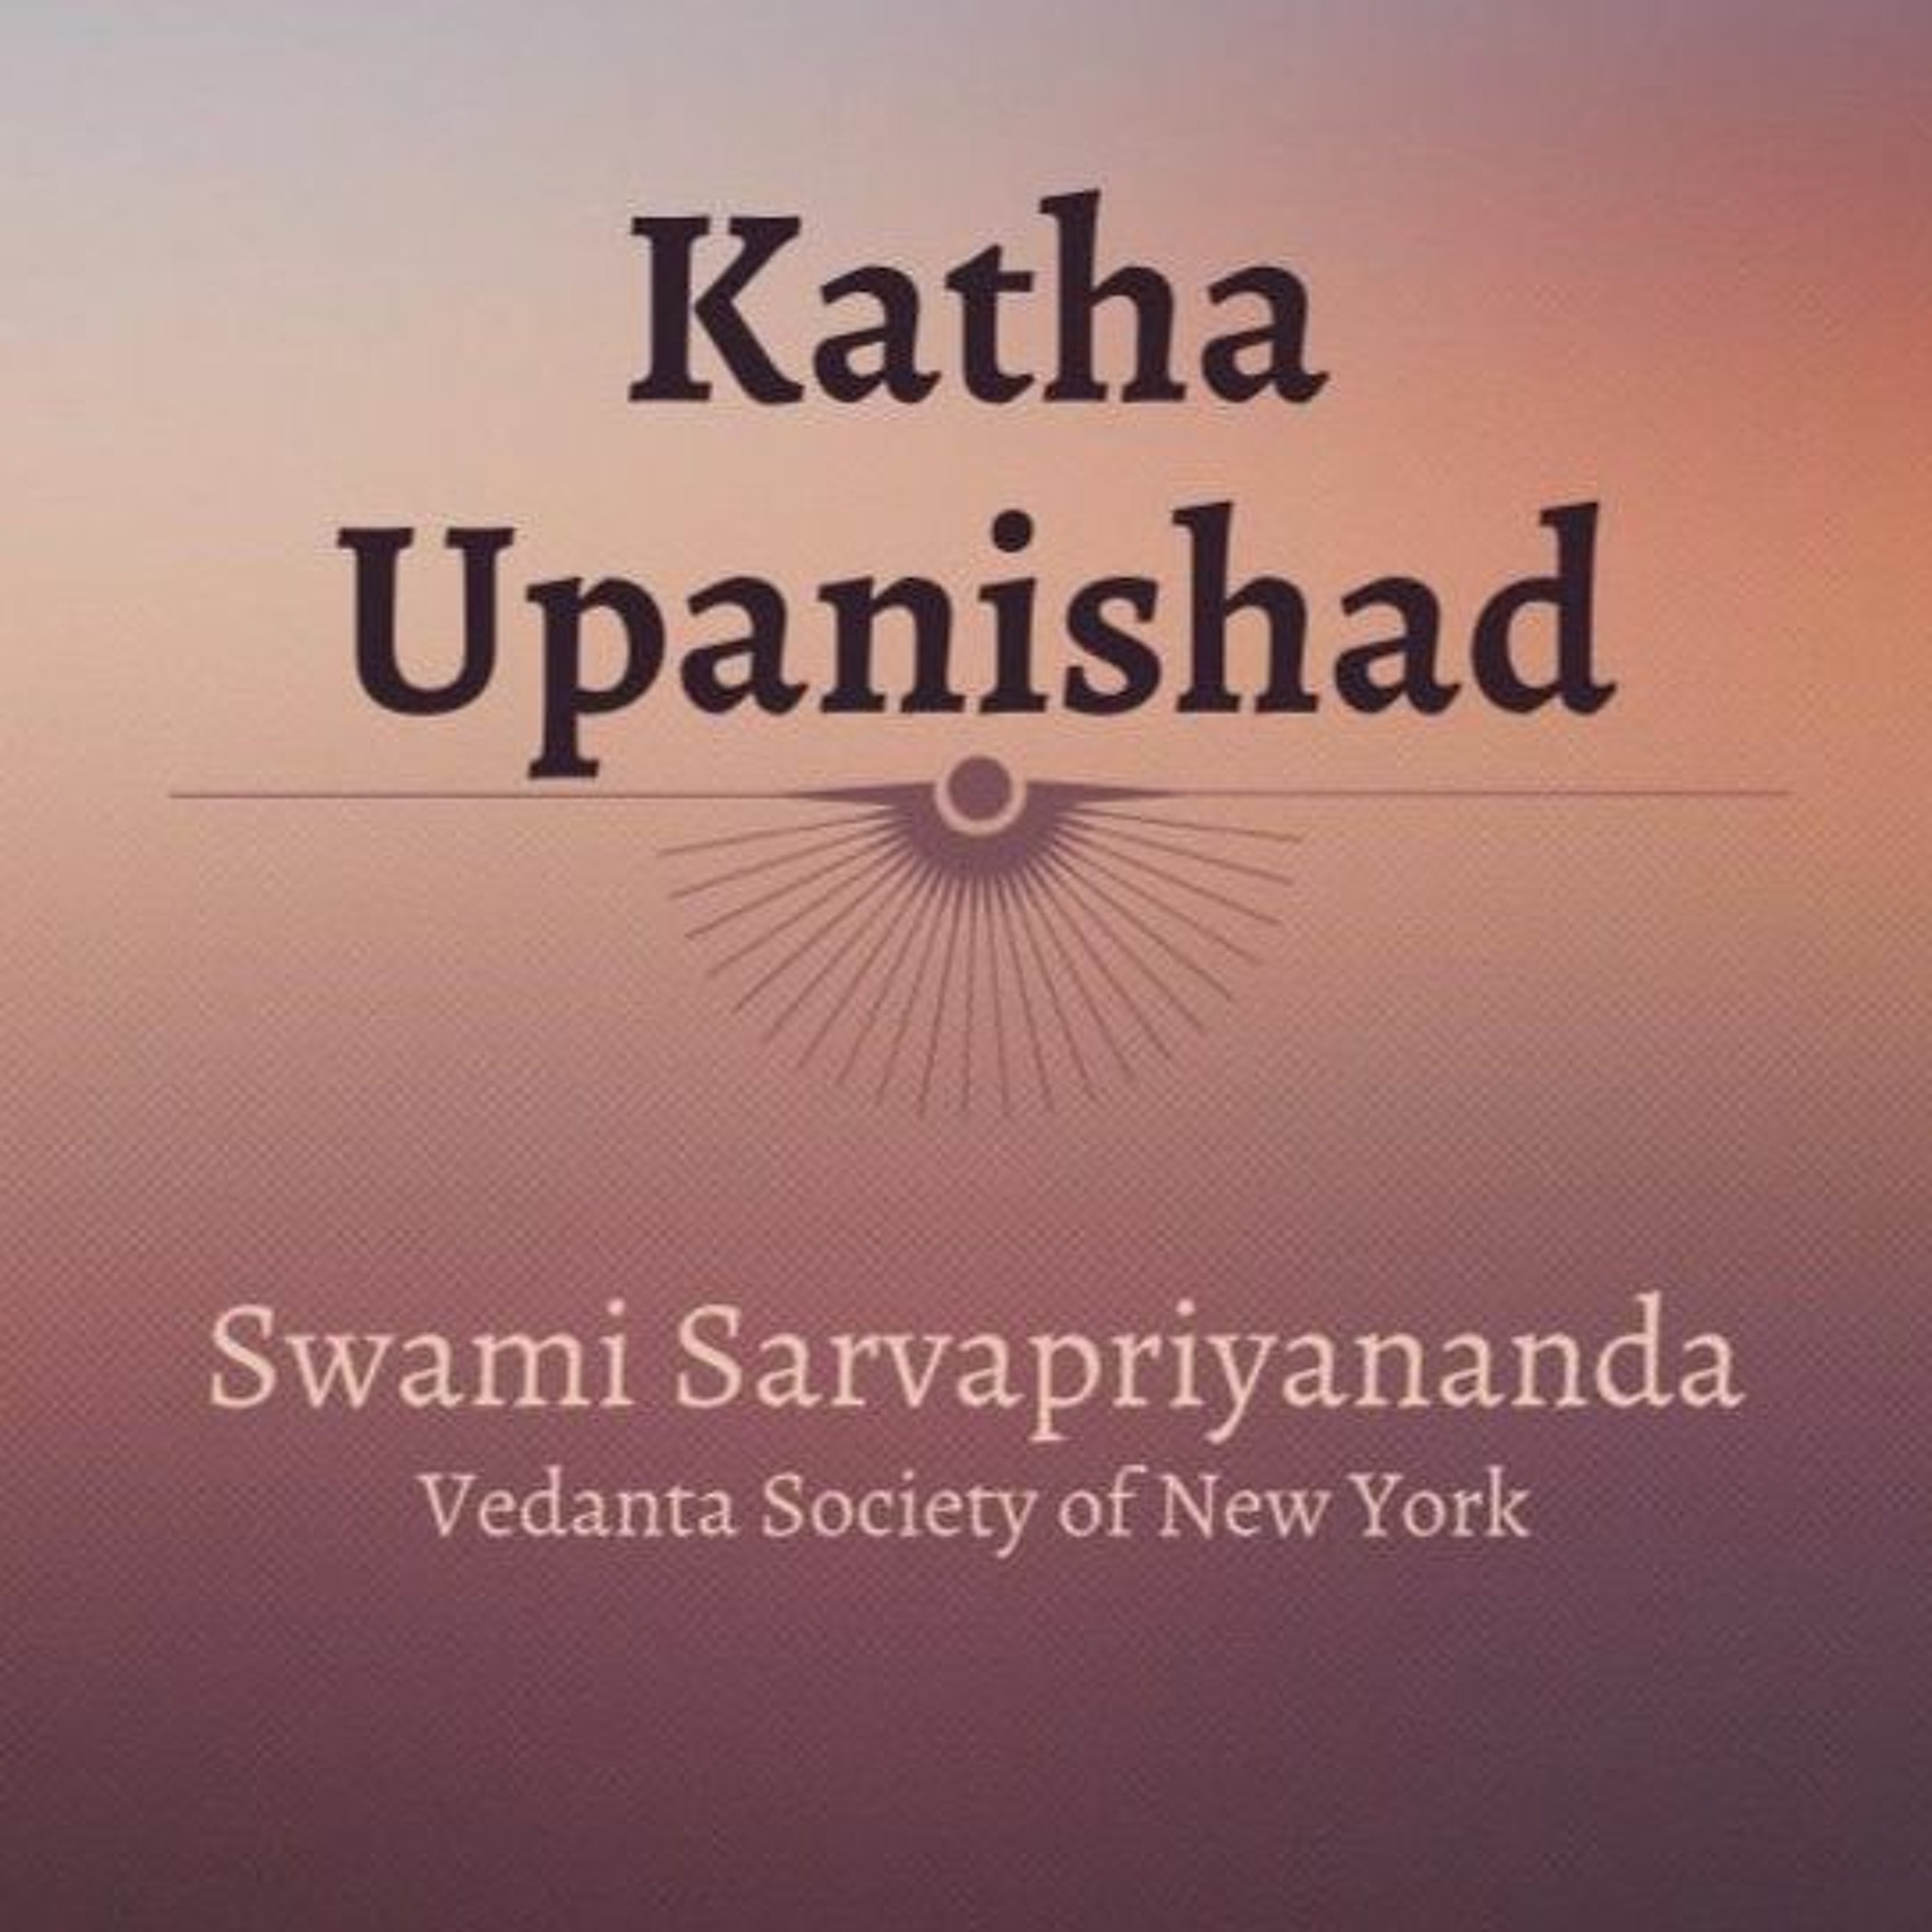 5. Katha Upanishad | Mantras 12-15 | Swami Sarvapriyananda